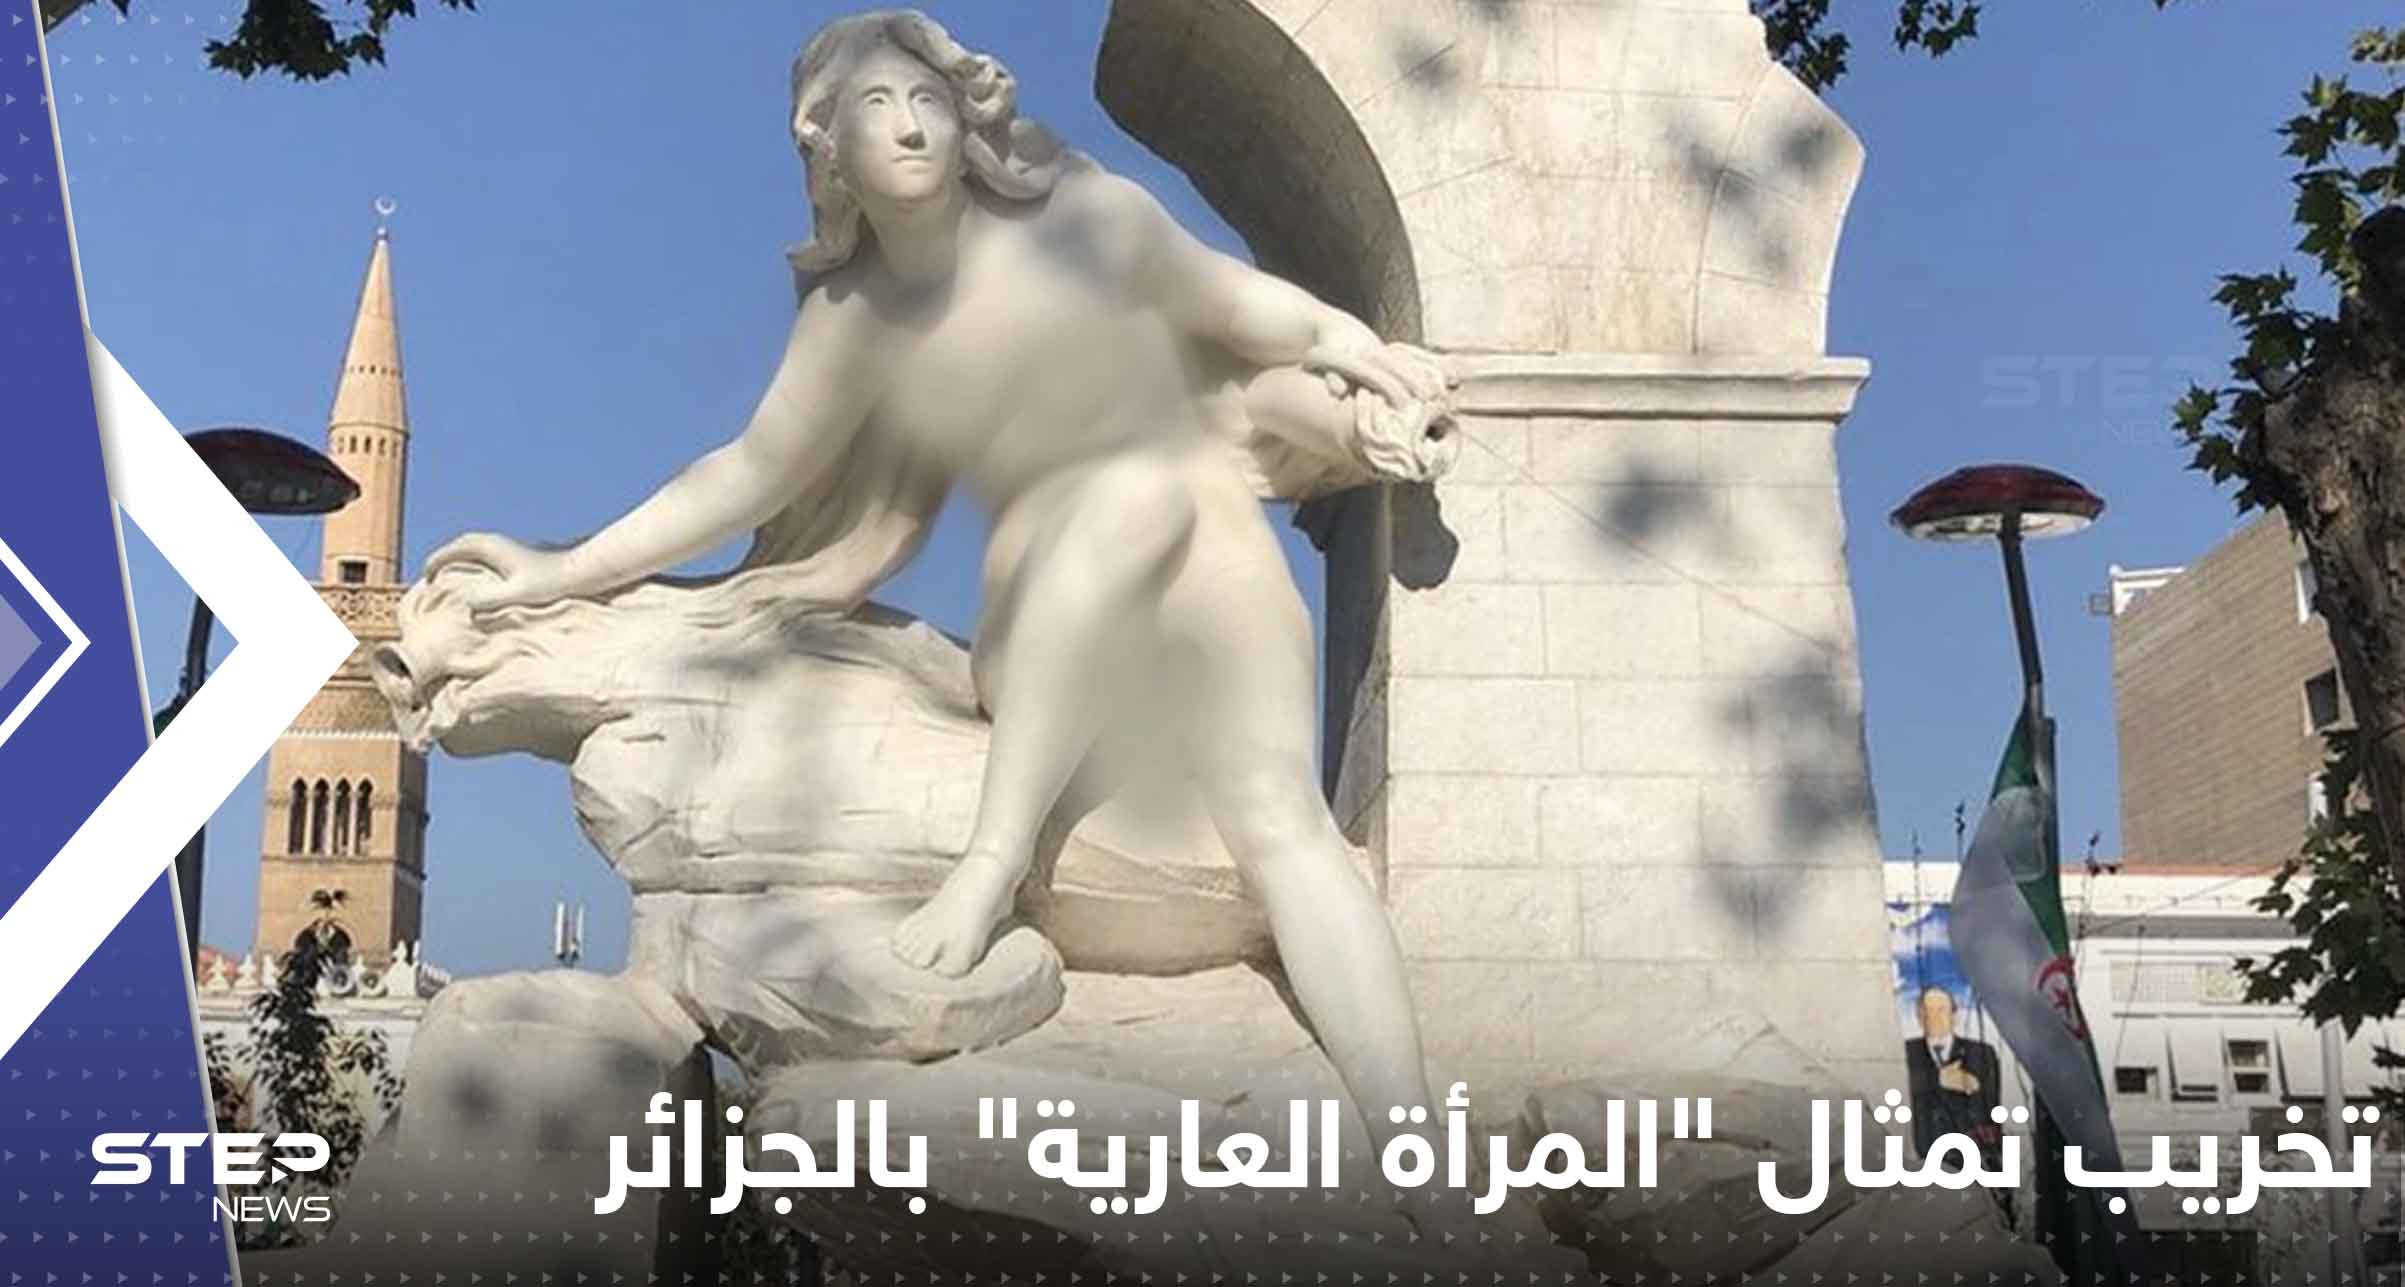 تمثال "المرأة العارية" بالجزائر